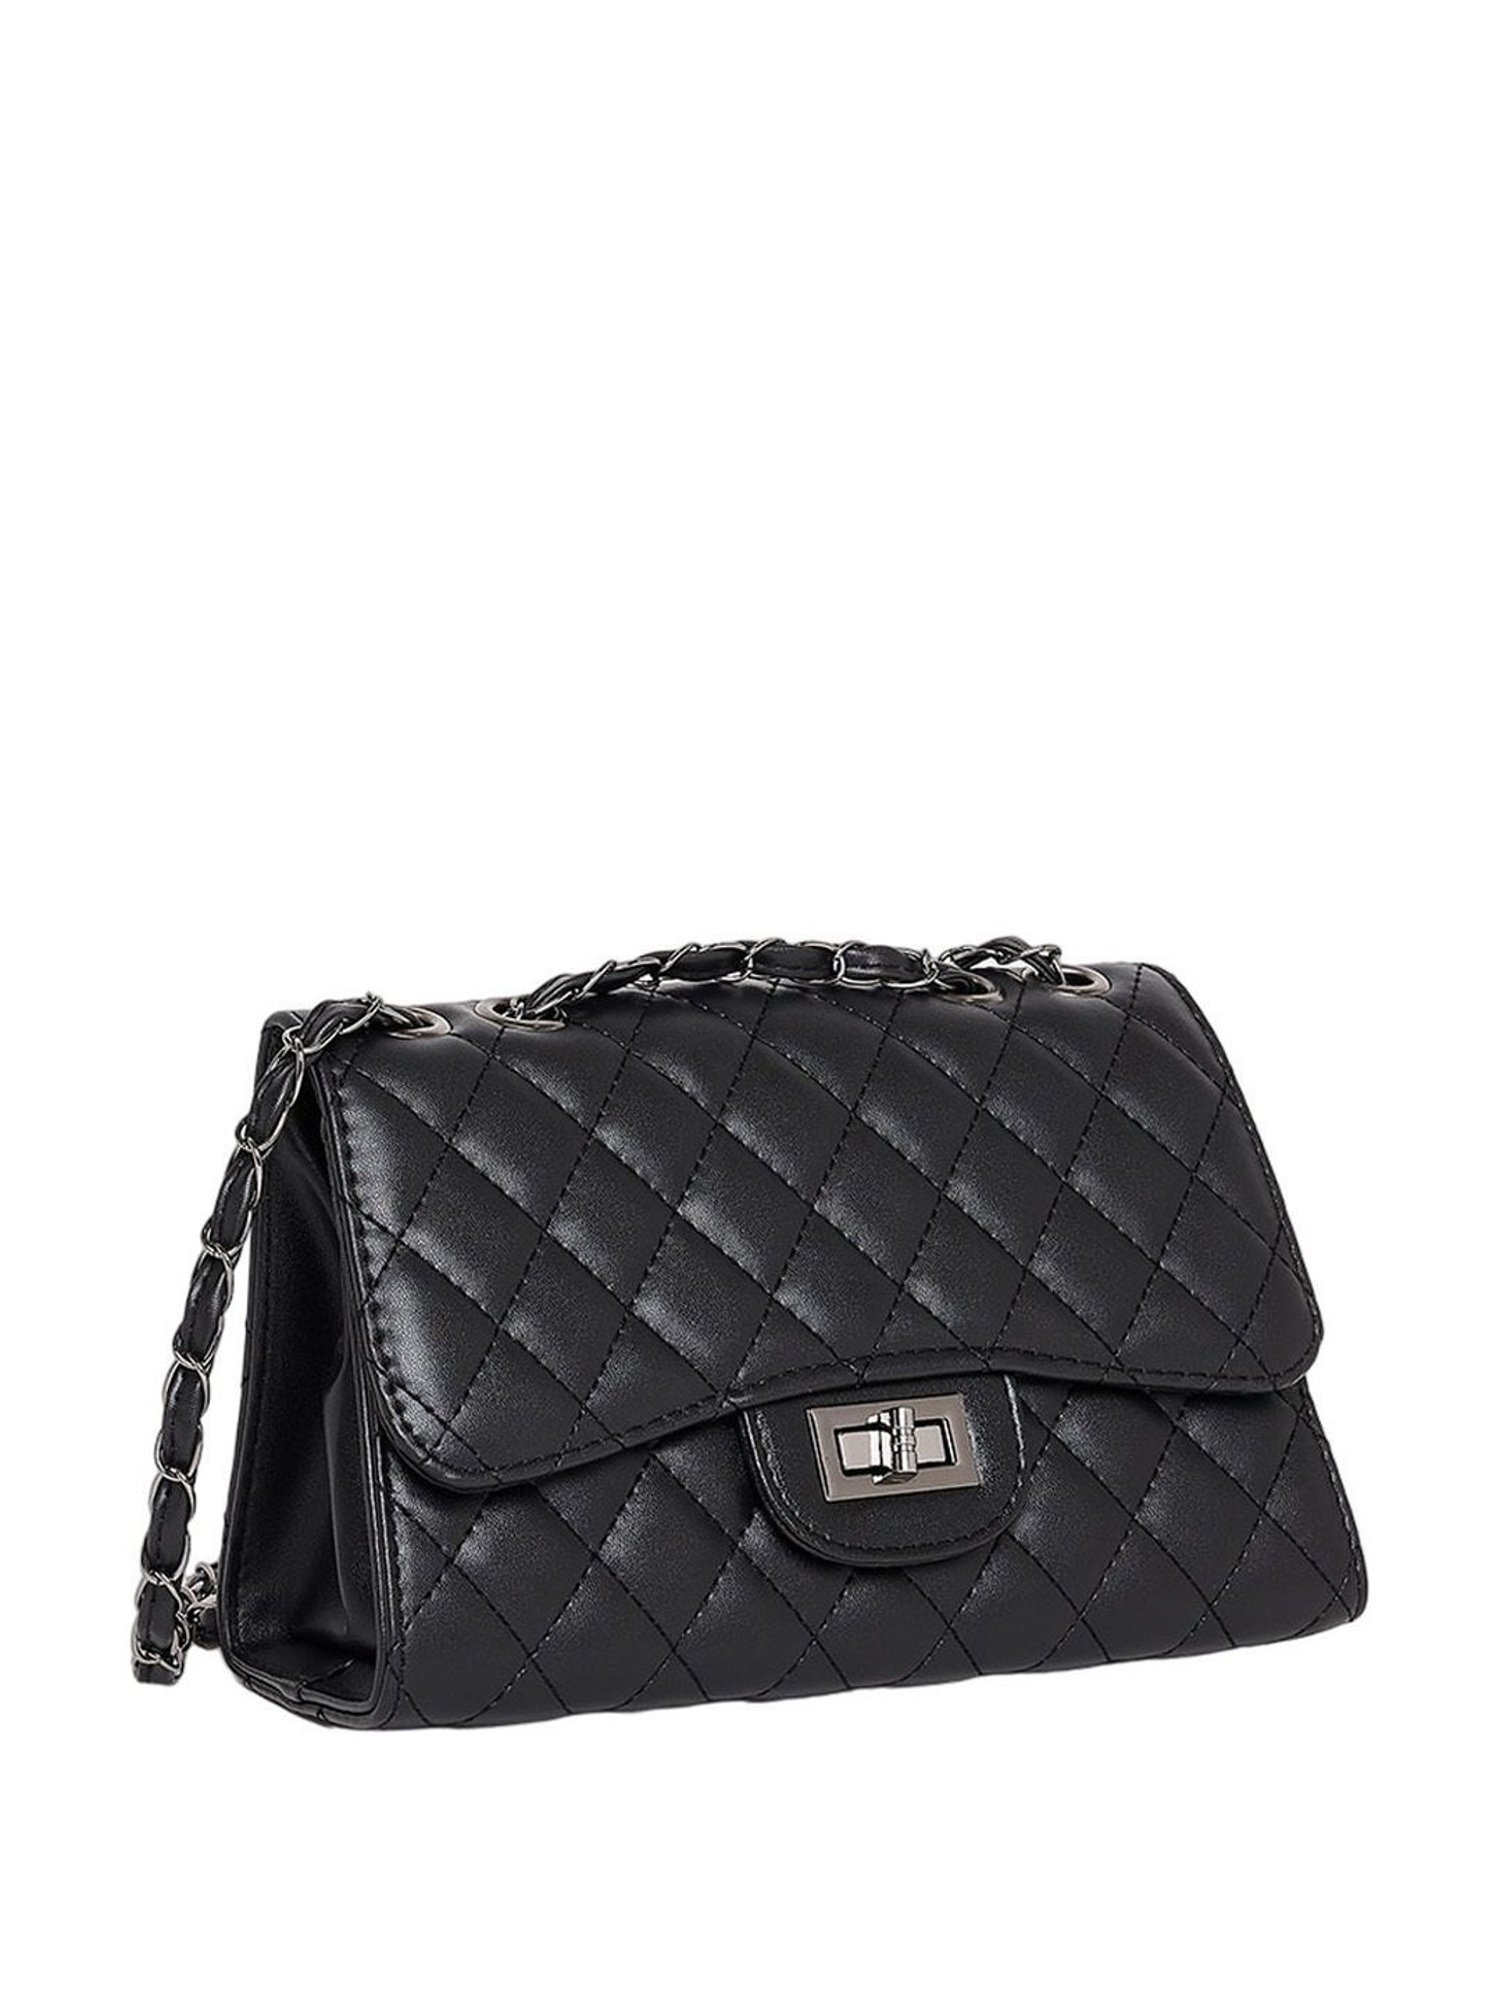 Dolce & Gabbana Devotion Large Shoulder Bag Black Quilted Leather Cros –  Celebrity Owned